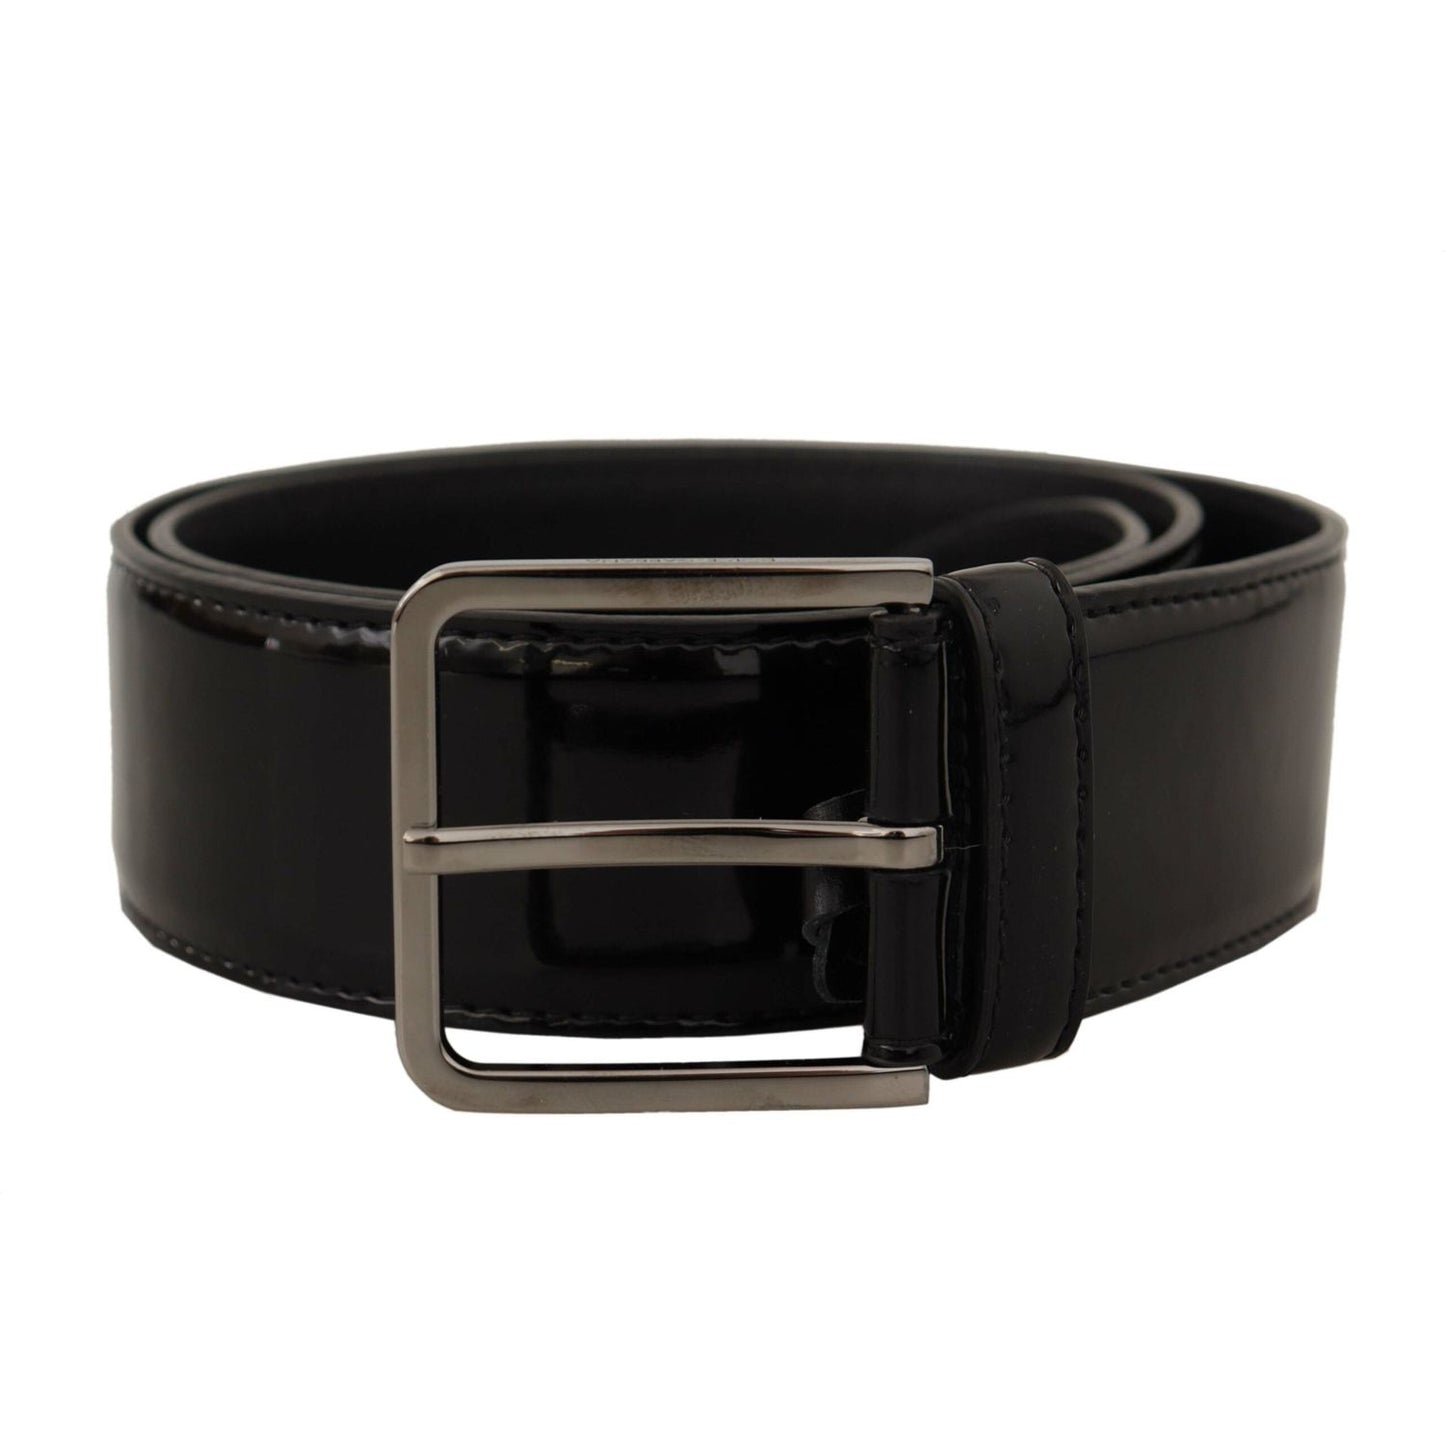 Elegant Black Leather Belt